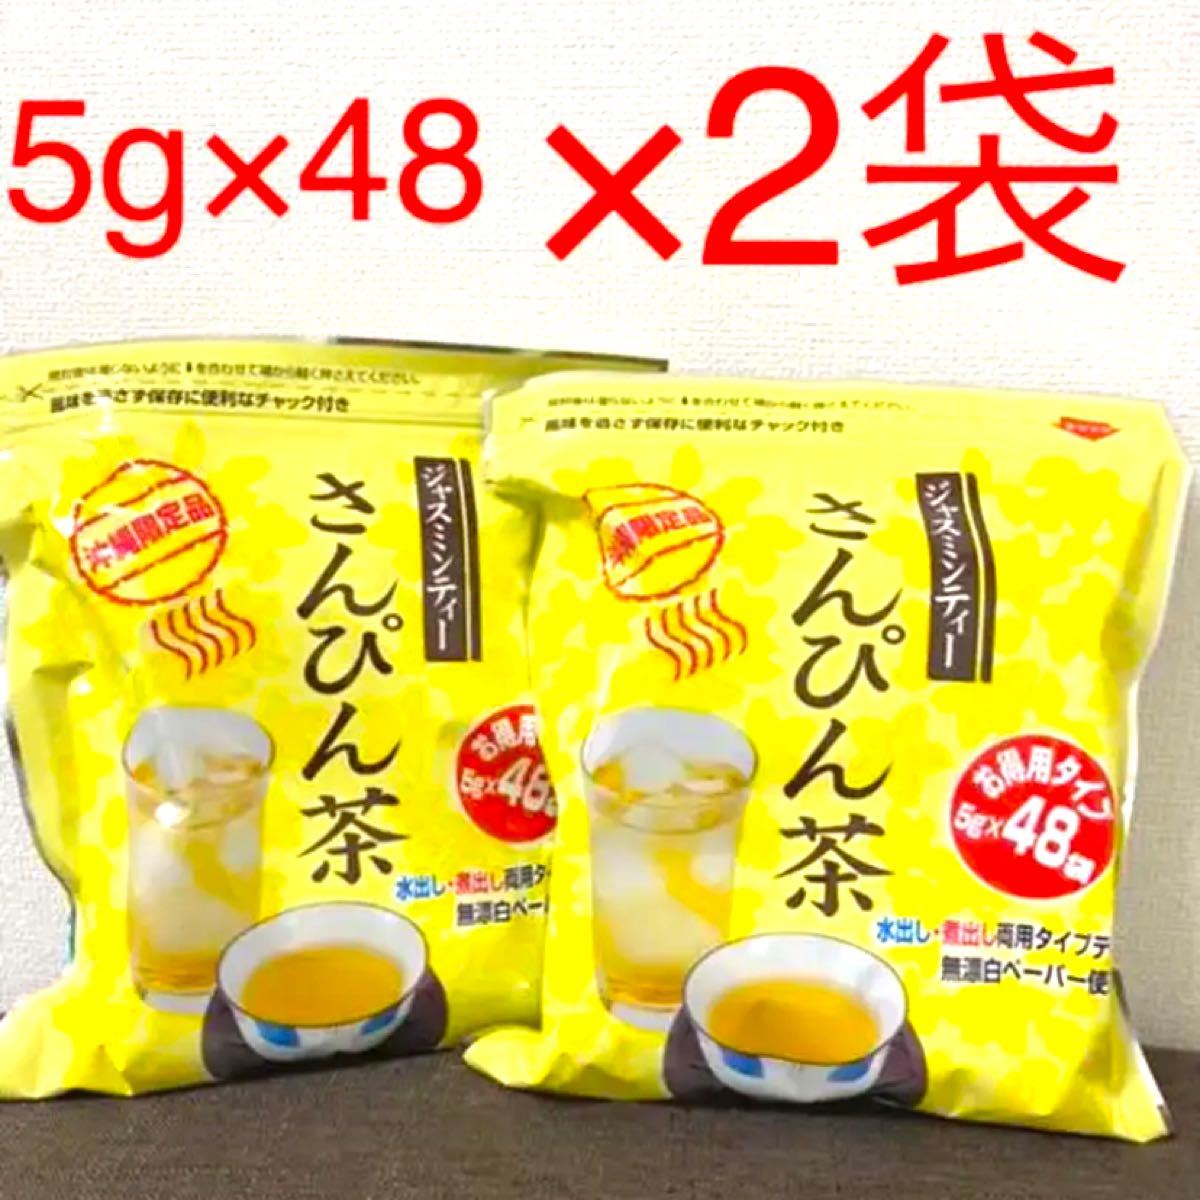 さんぴん茶(ジャスミンティー) お得用 5g×48パック入×2袋